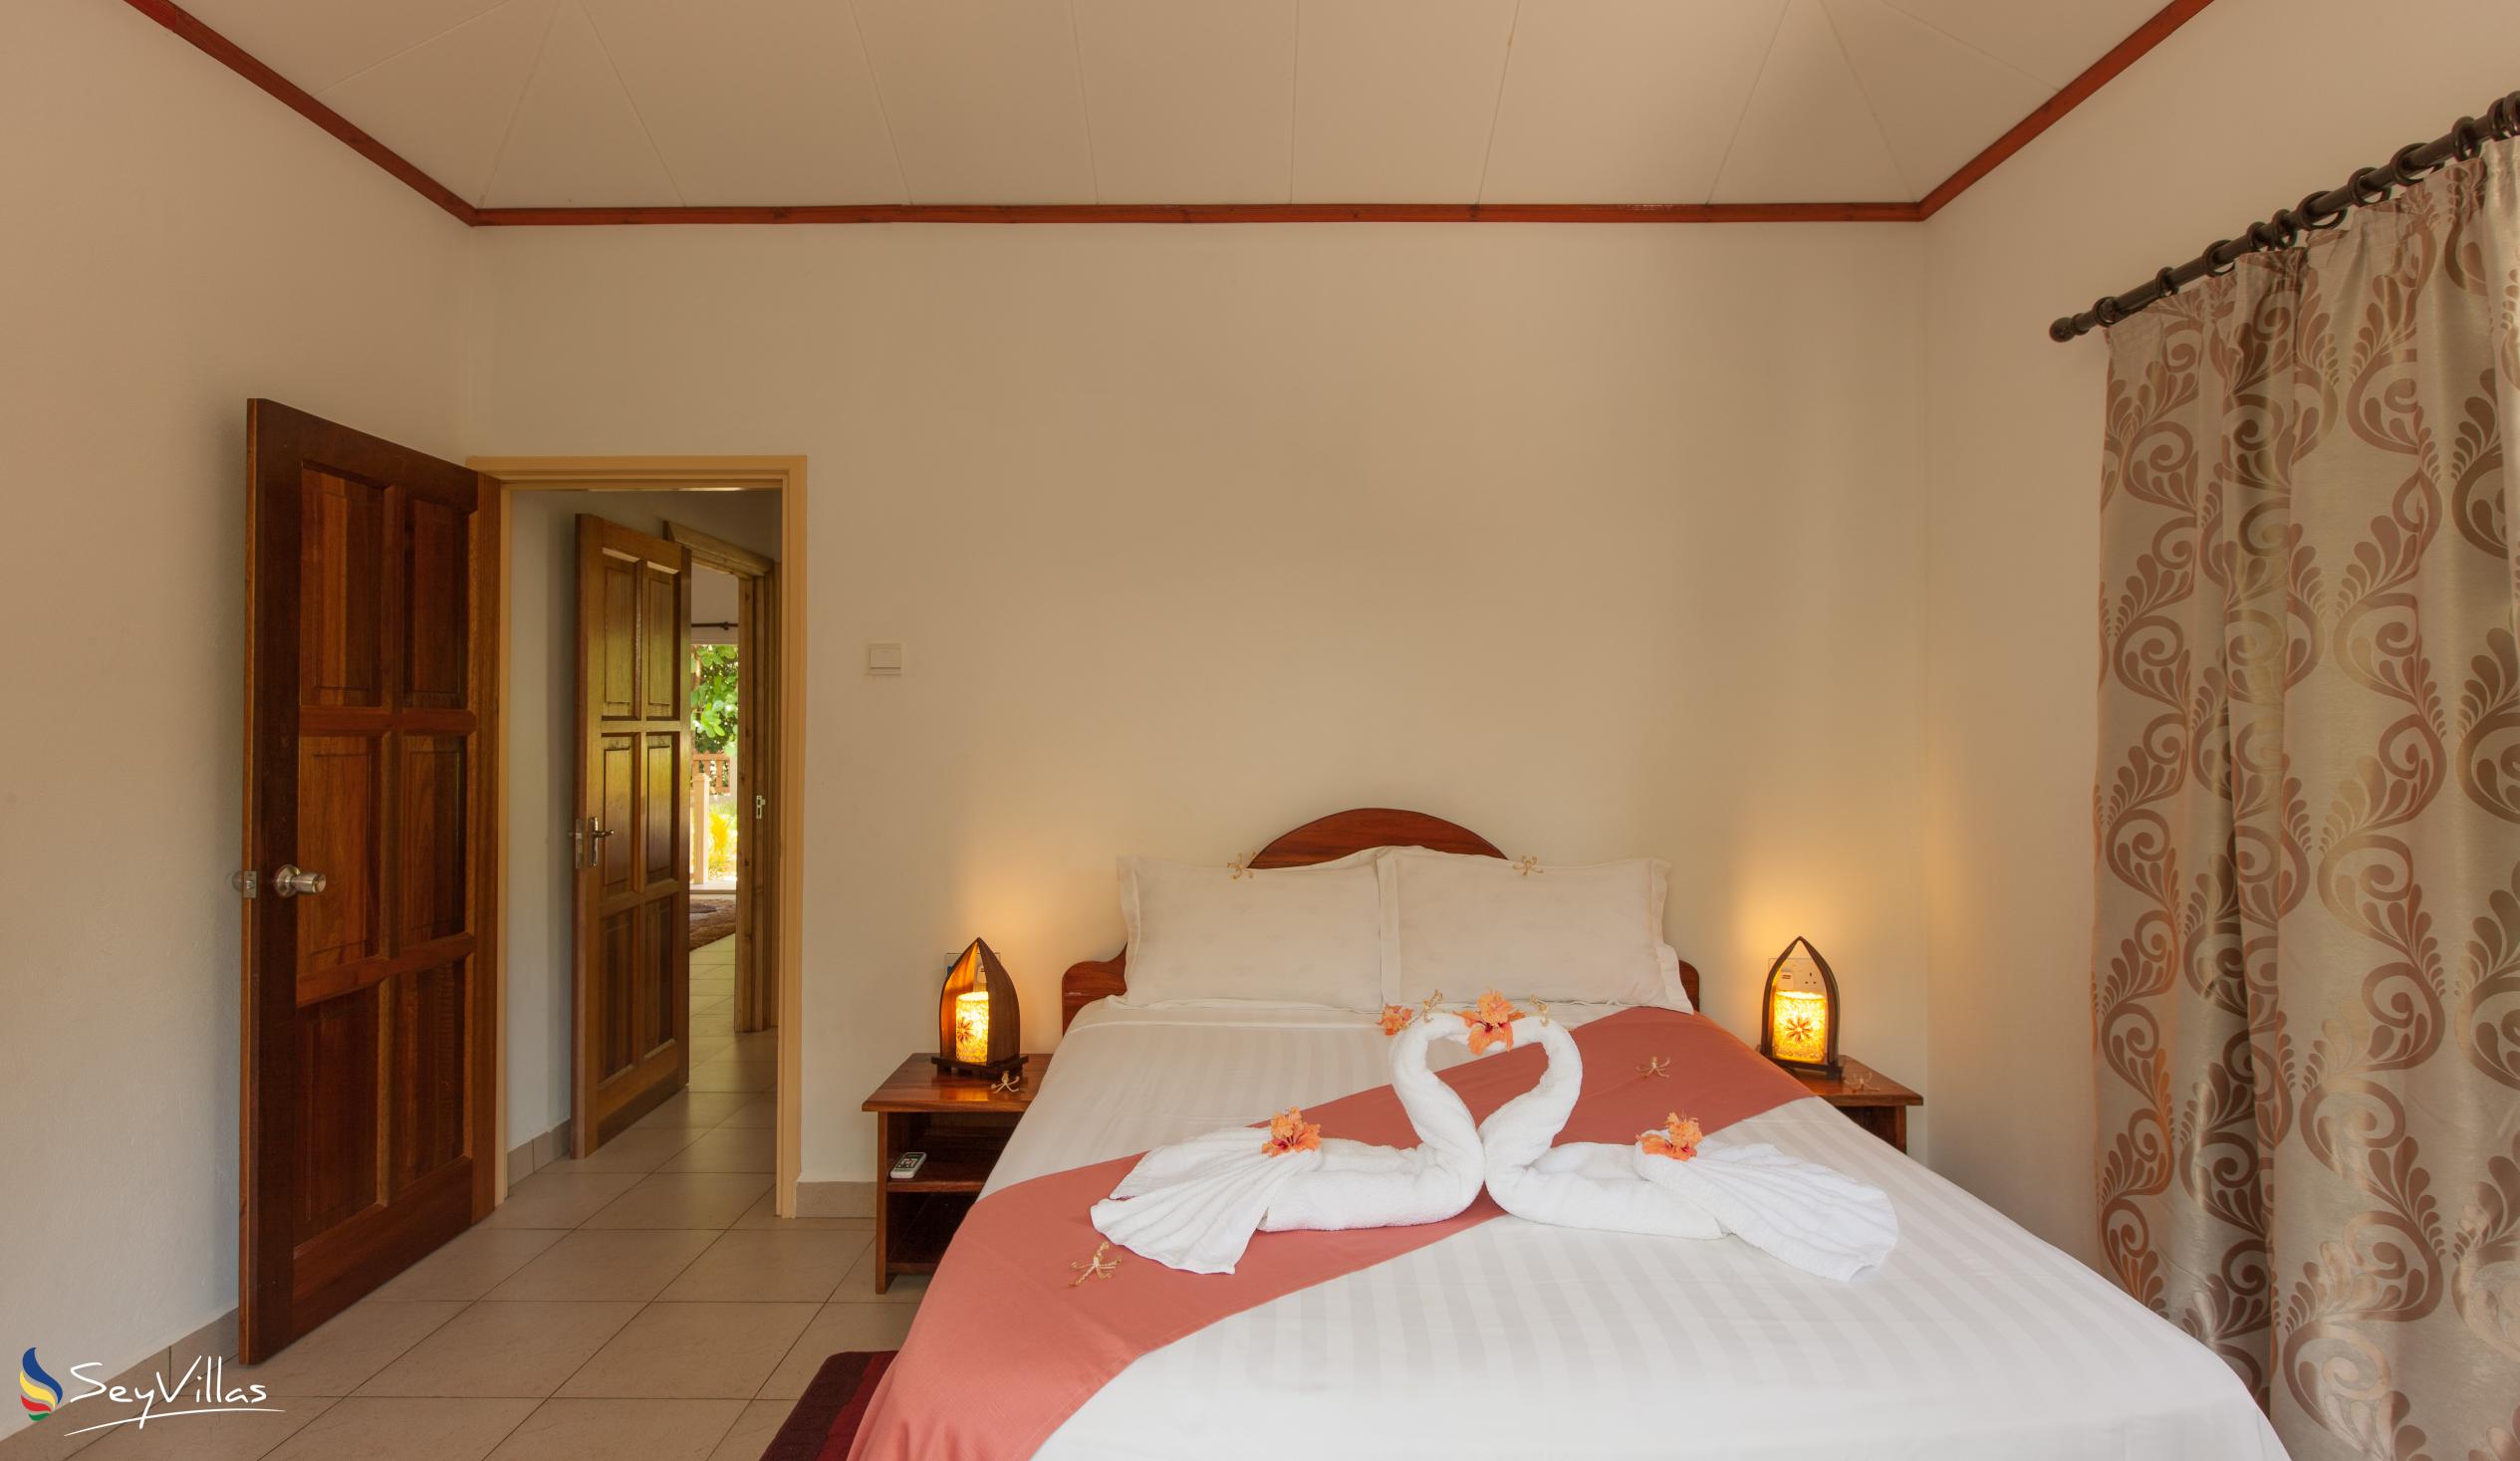 Photo 24: Hostellerie La Digue - 3-Bedroom Chalet - La Digue (Seychelles)